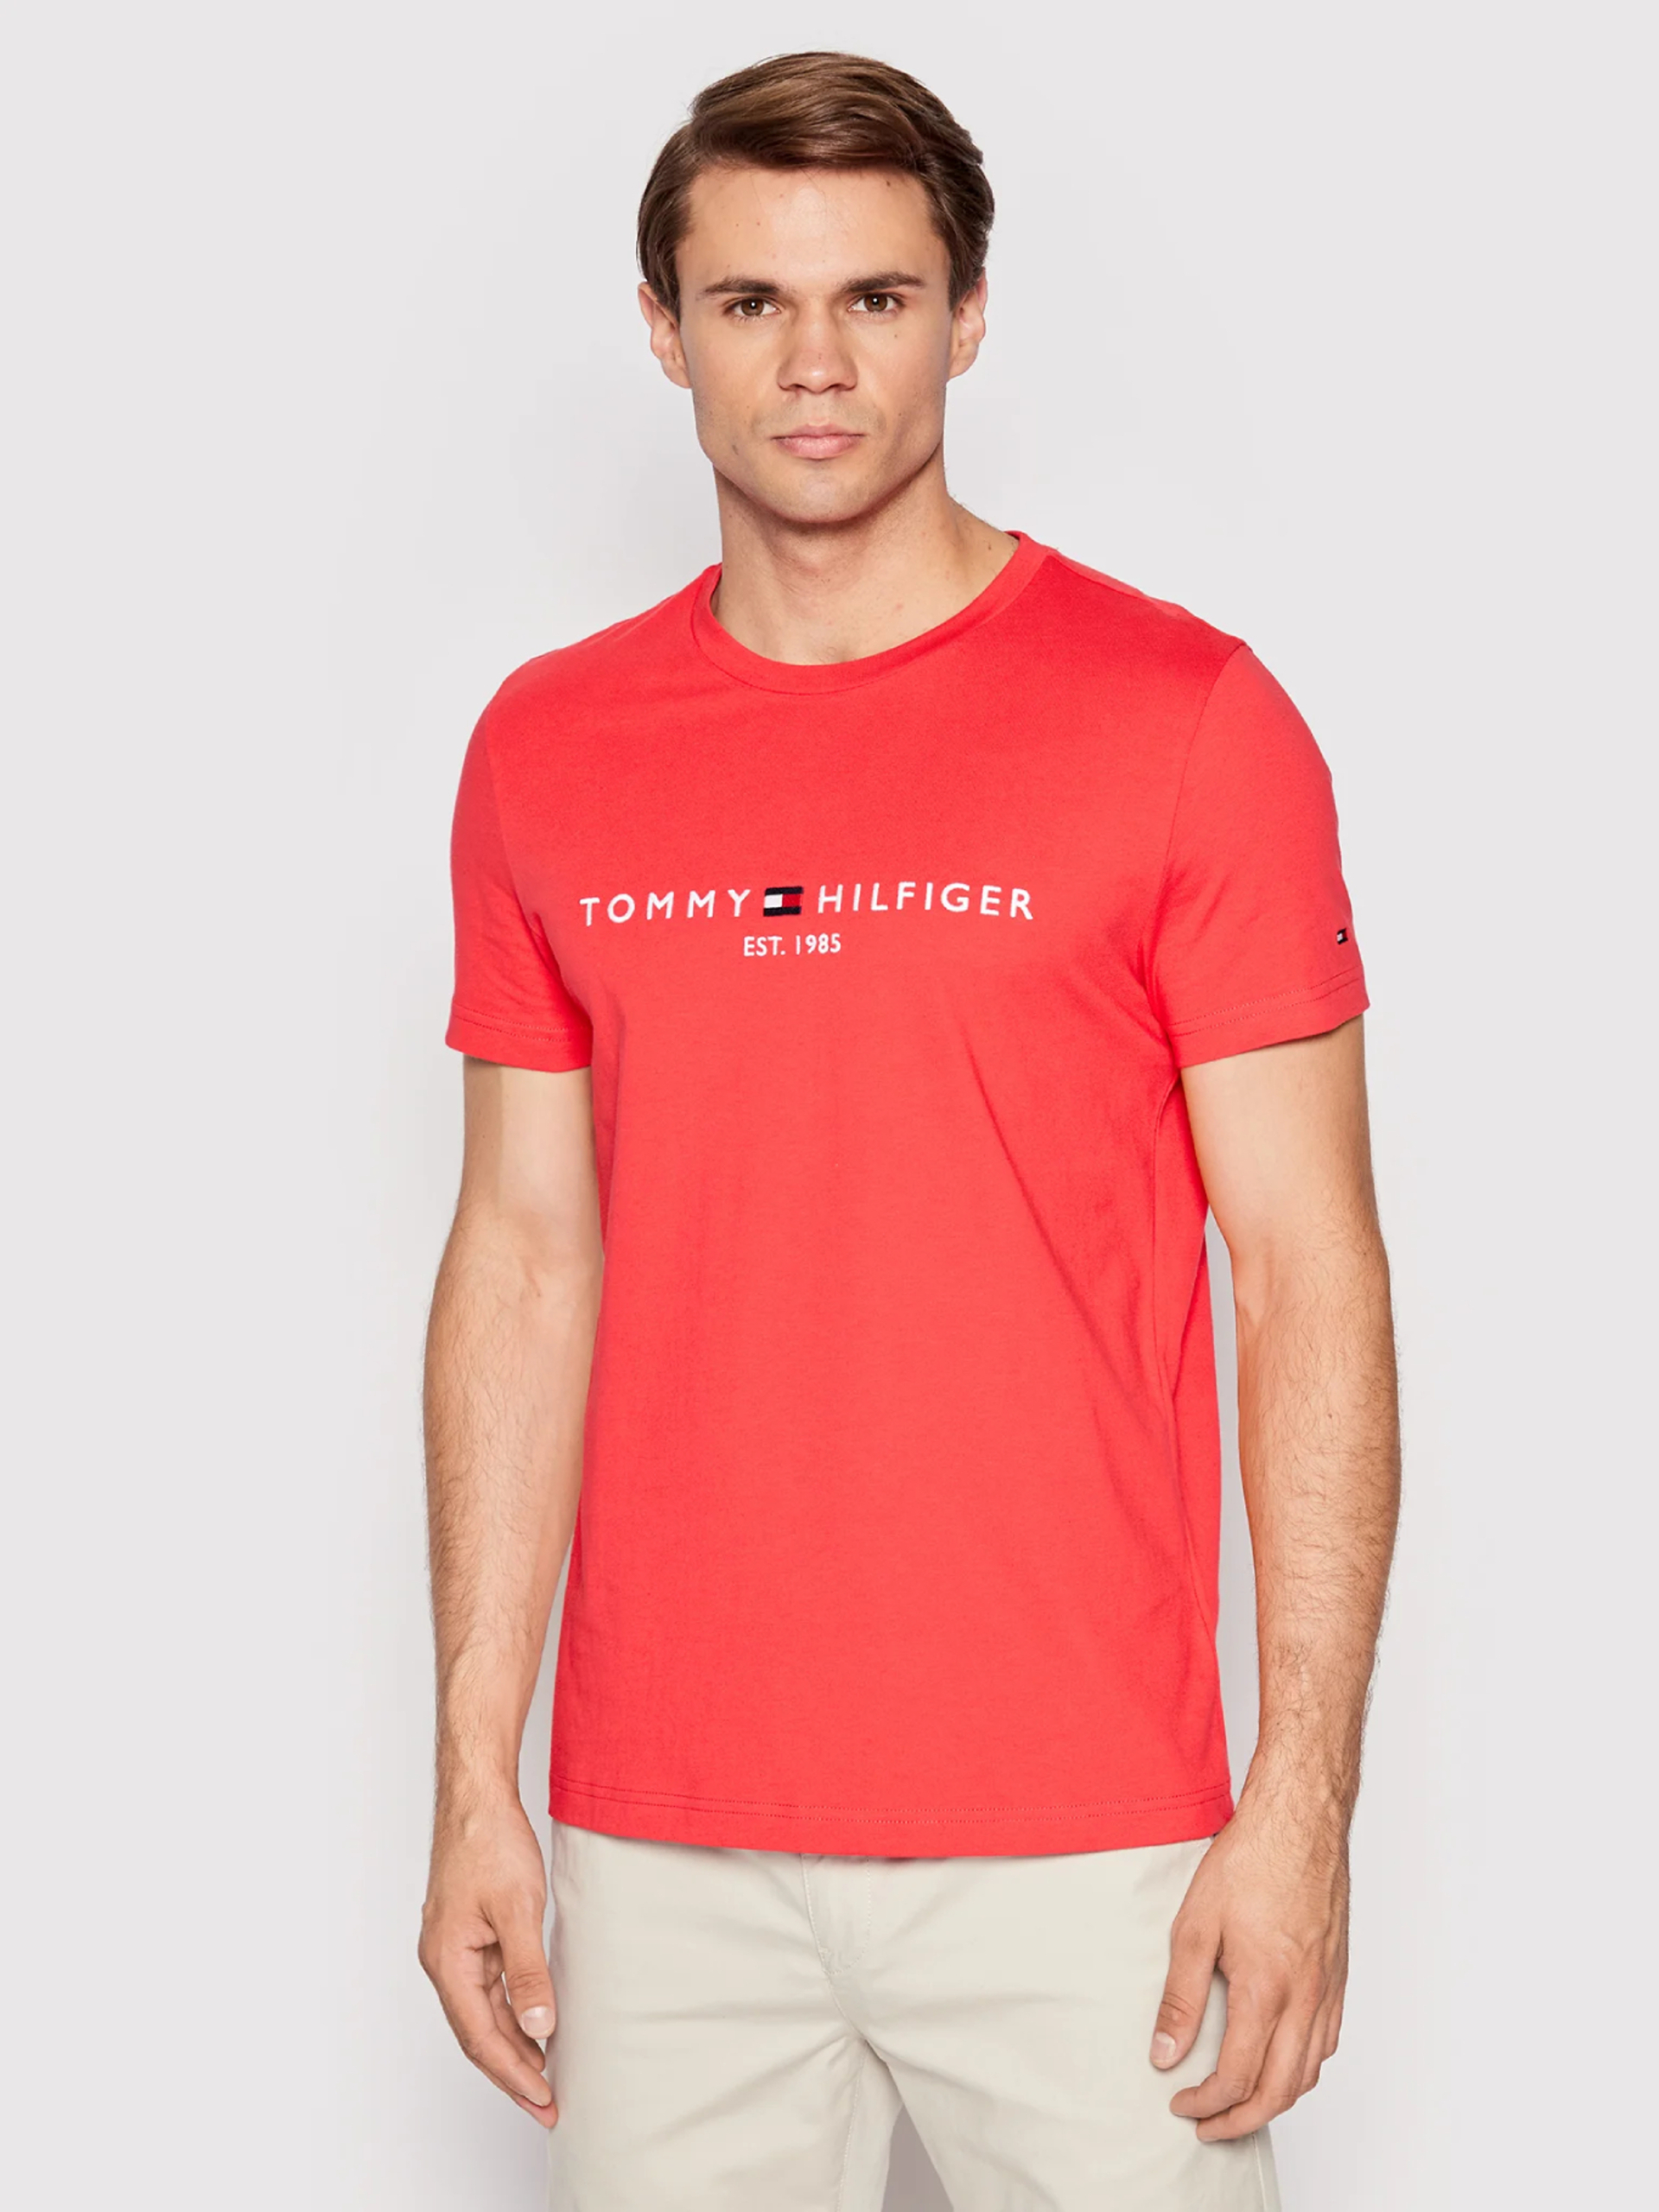 hvis du kan tro Plante træer Tommy Hilfiger pánské červené tričko Logo - Mode.cz